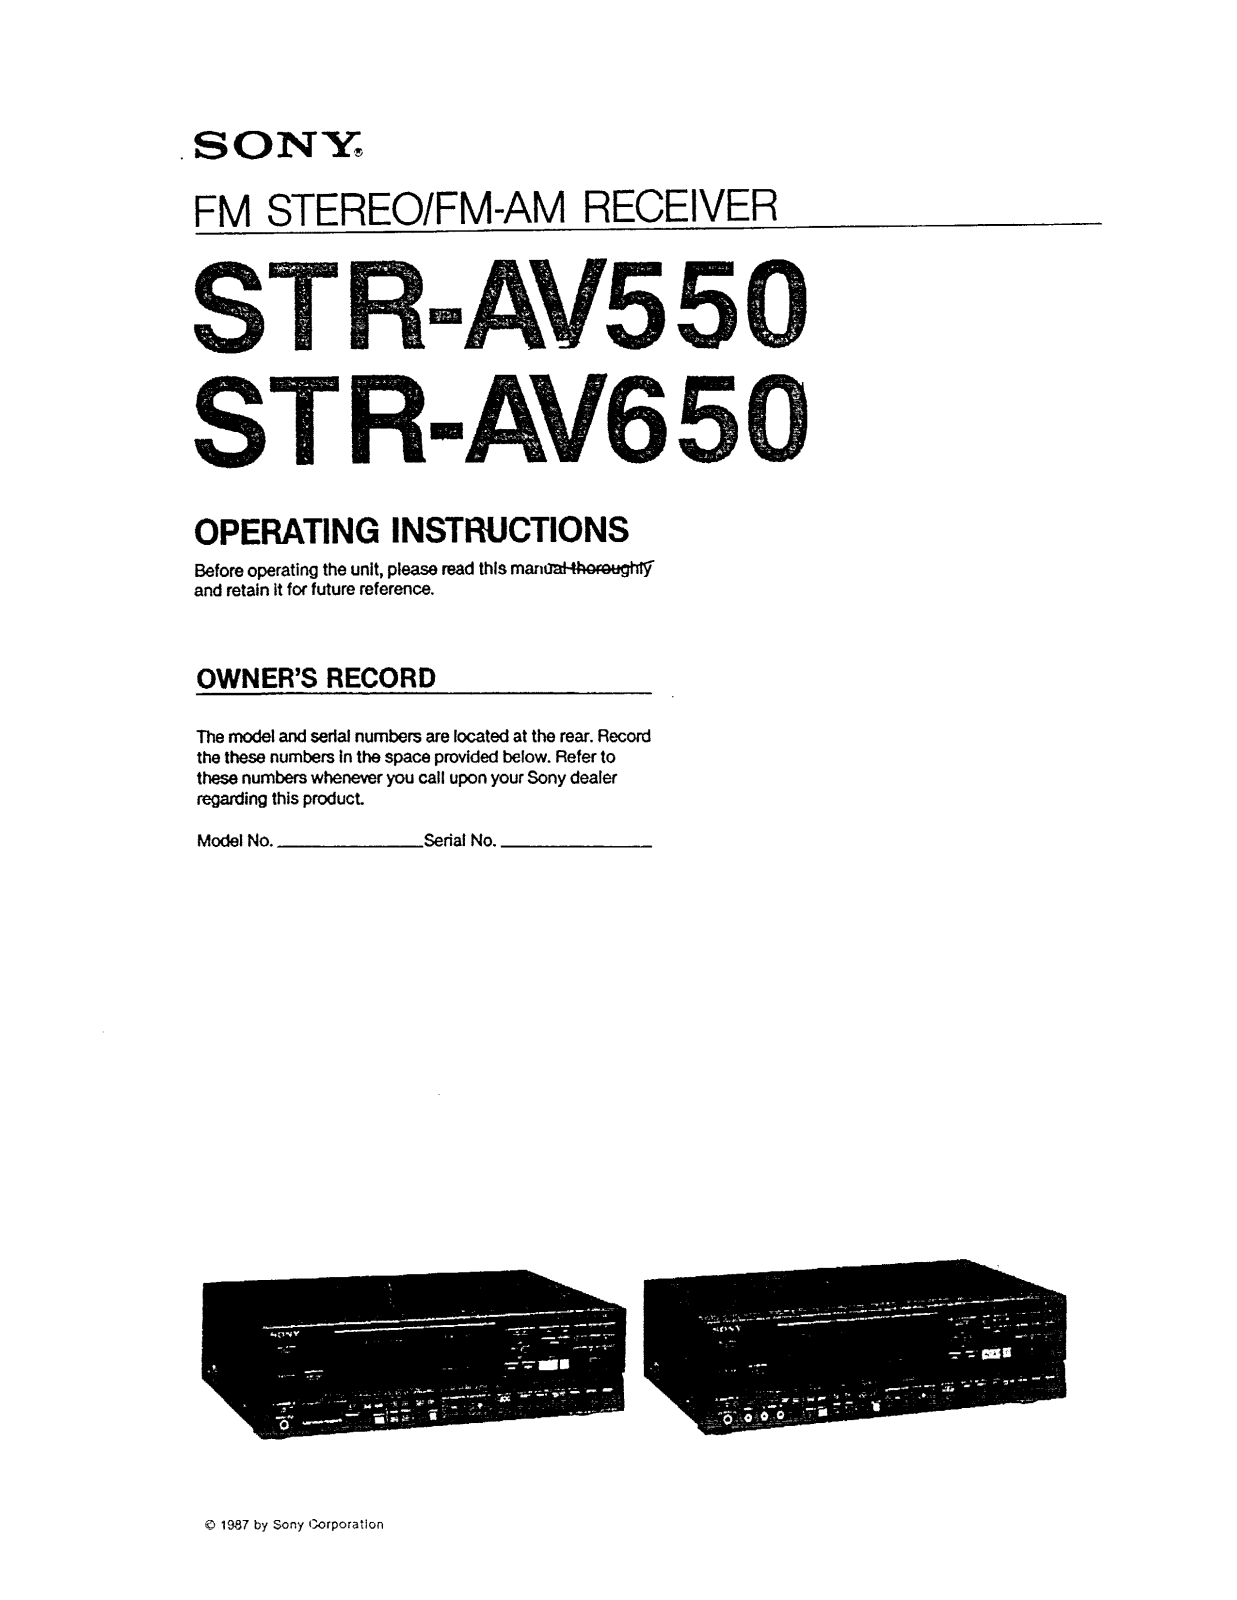 Sony ST-RAV650 User Manual